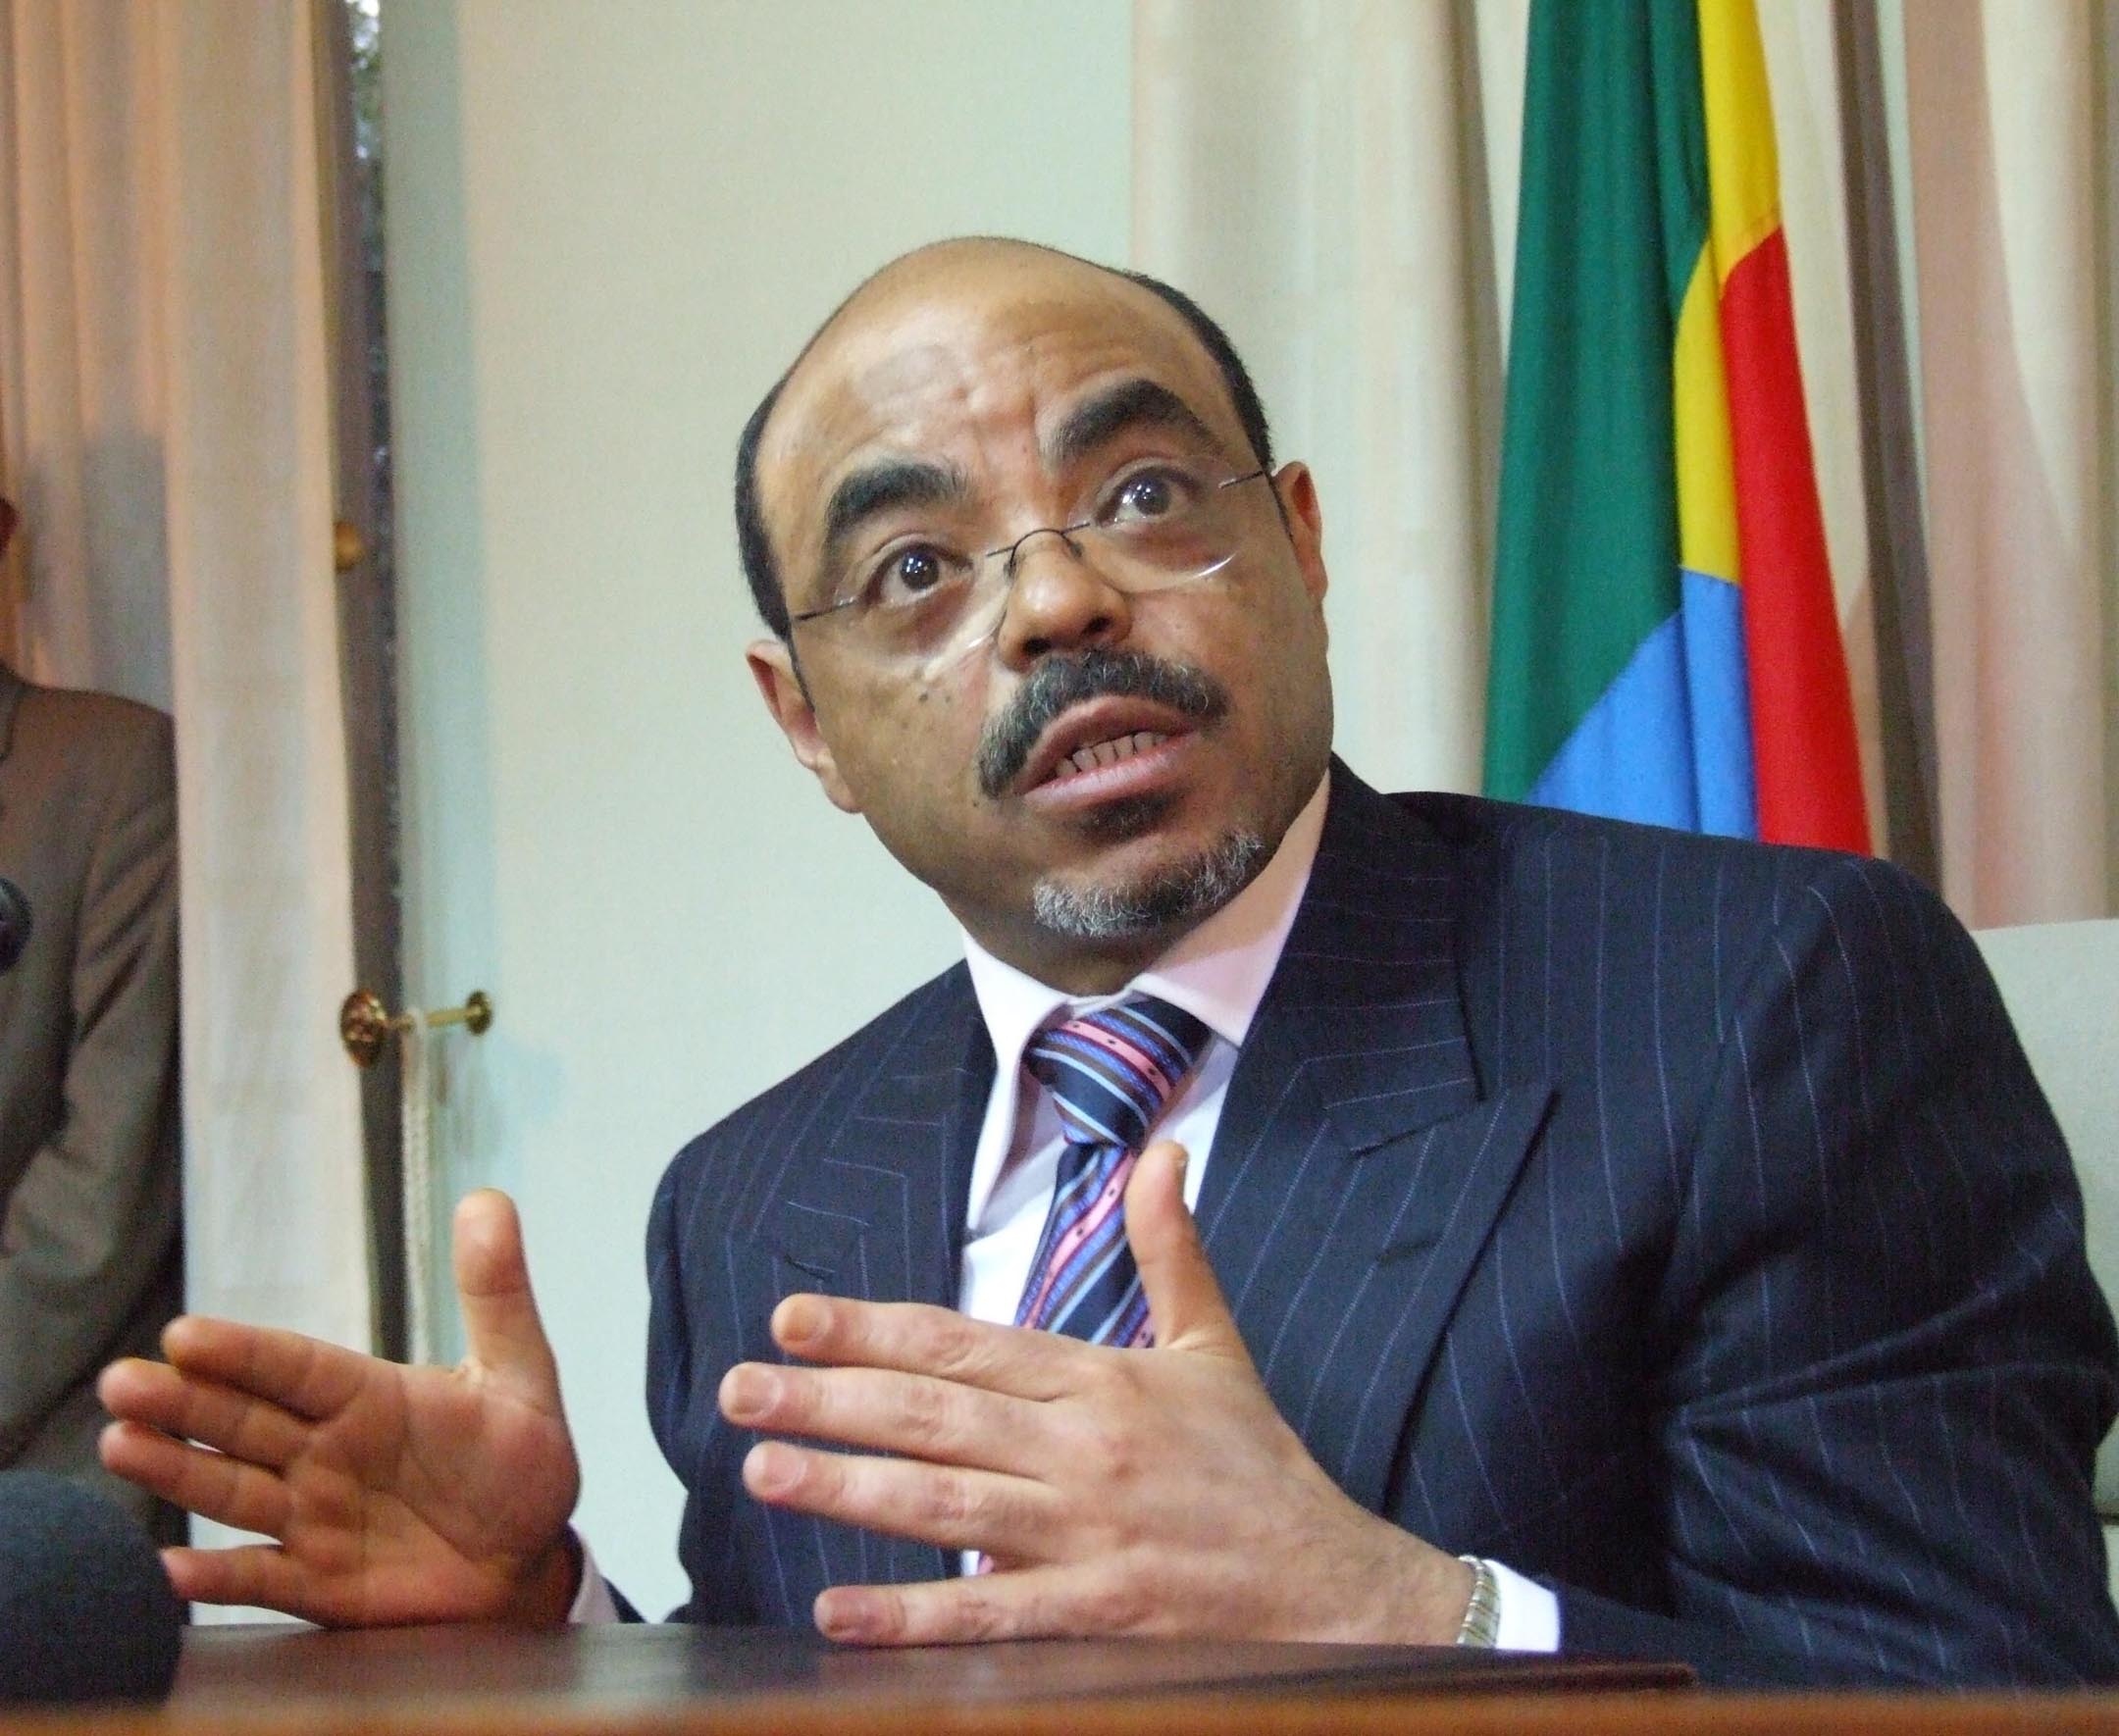 Meles Zenawi, Besök, Martin Schibbye, Etiopien, Carl Bildt, Johan Persson, Fängelse, World Economic Forum